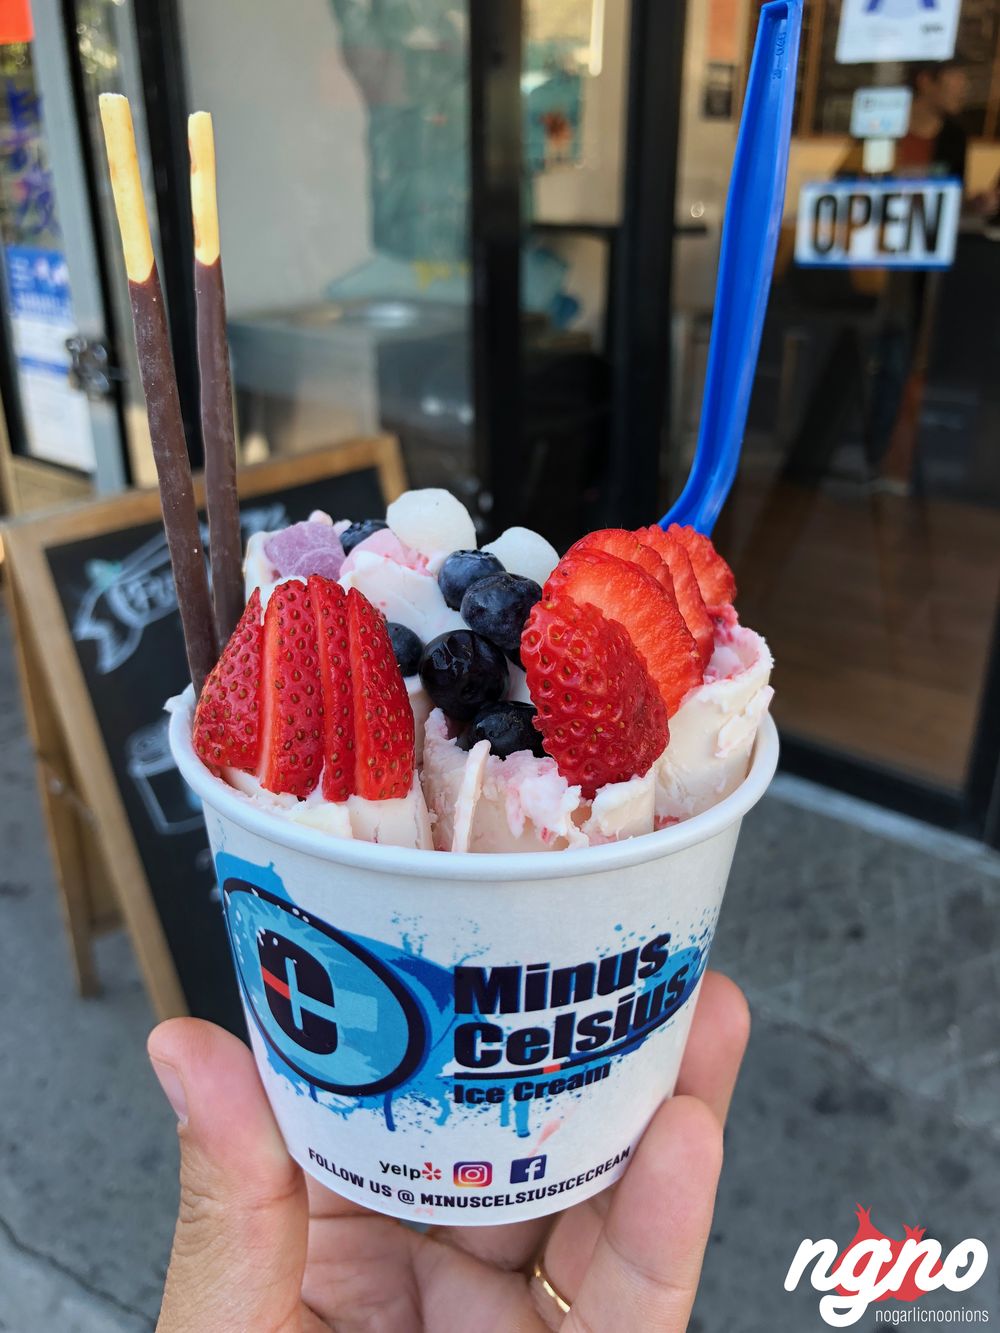 minus-celcius-ice-cream-new-york112017-10-22-02-15-072018-07-14-05-02-11